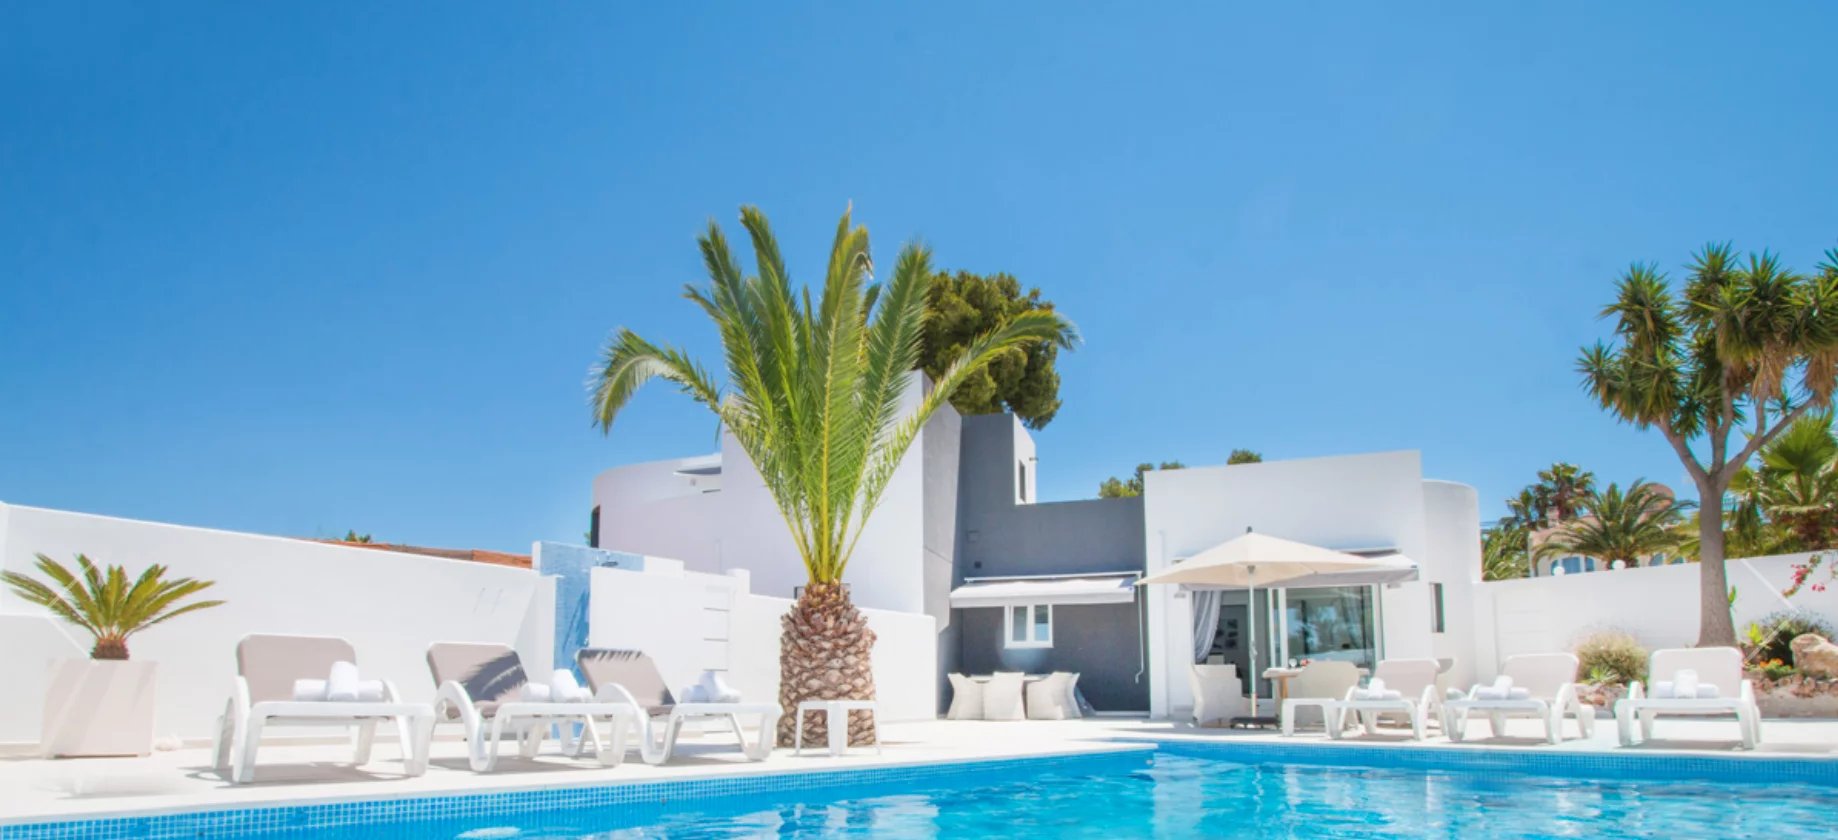 Gran villa con 3 alojamientos y 2 piscinas privadas en venta en San Jaime